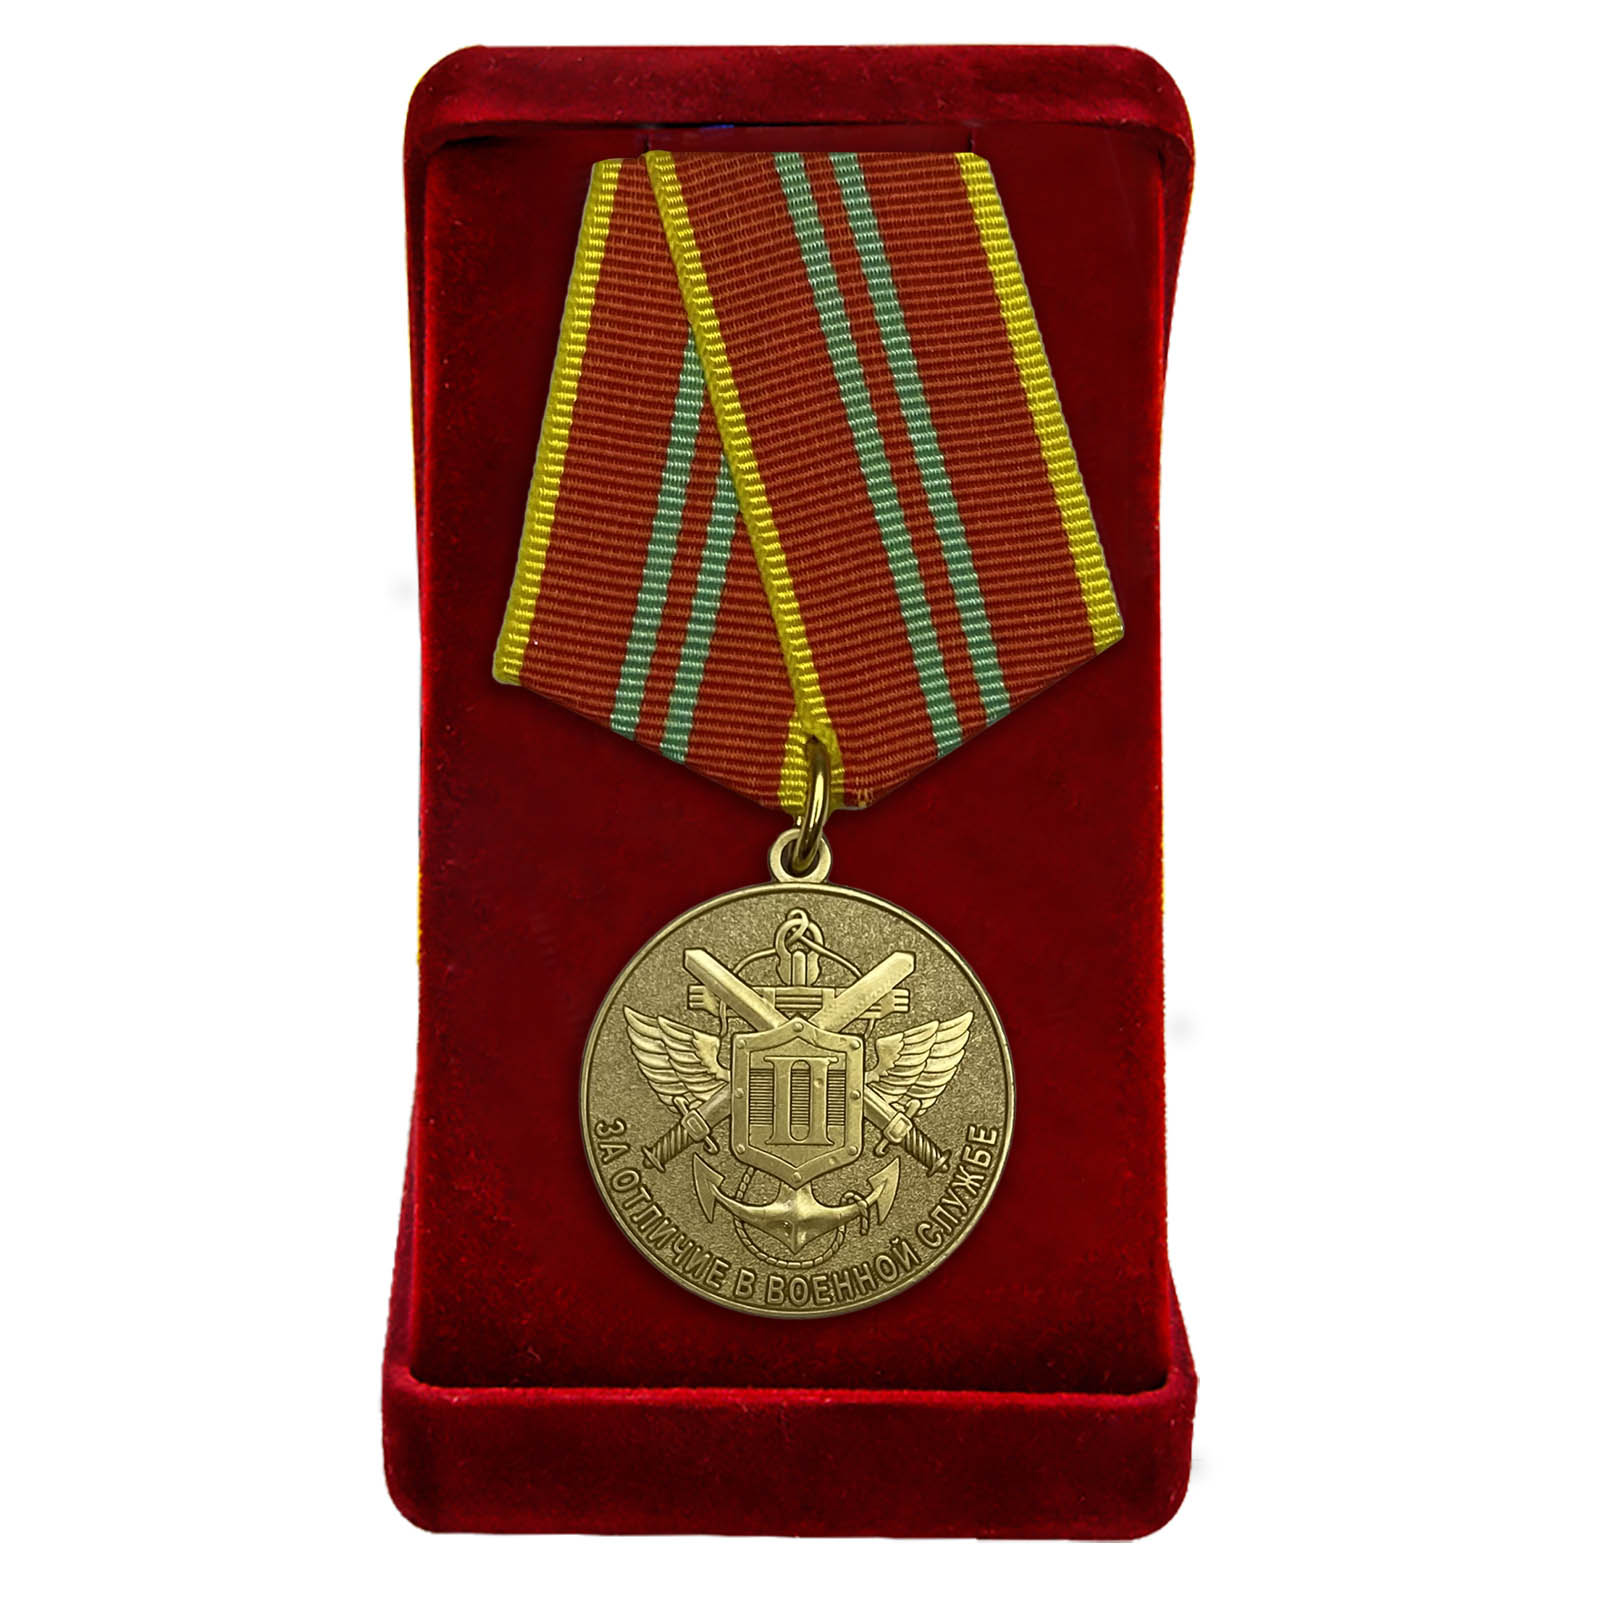 Купить медаль МЧС РФ "За отличие в военной службе" 2 степени онлайн